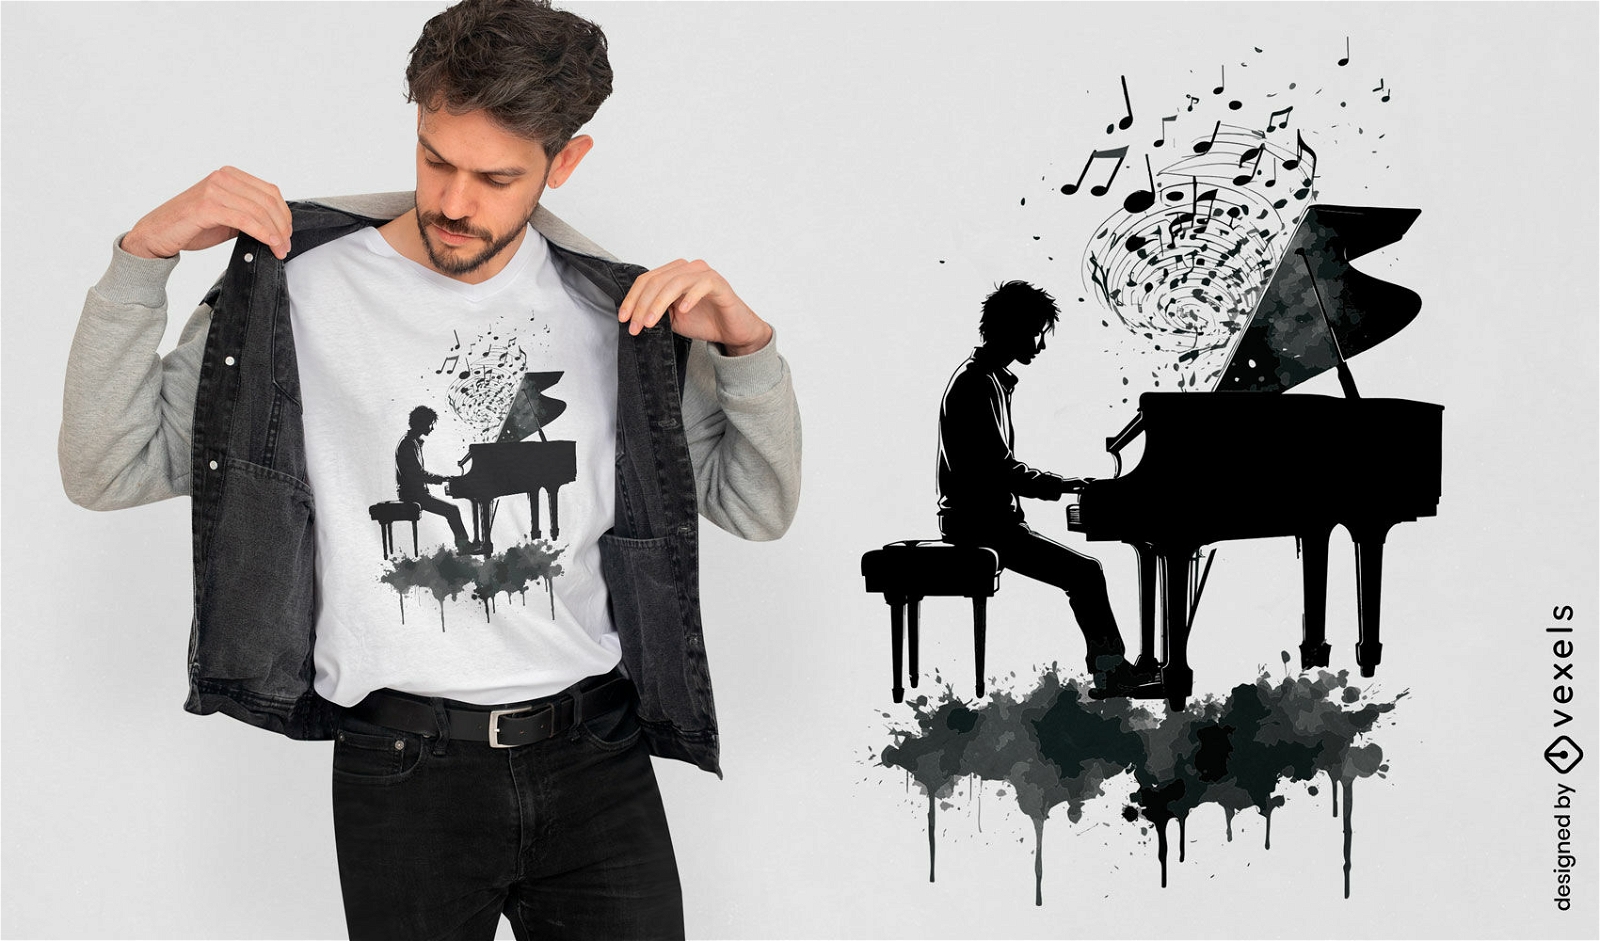 Dise?o de camiseta de silueta de hombre piano.